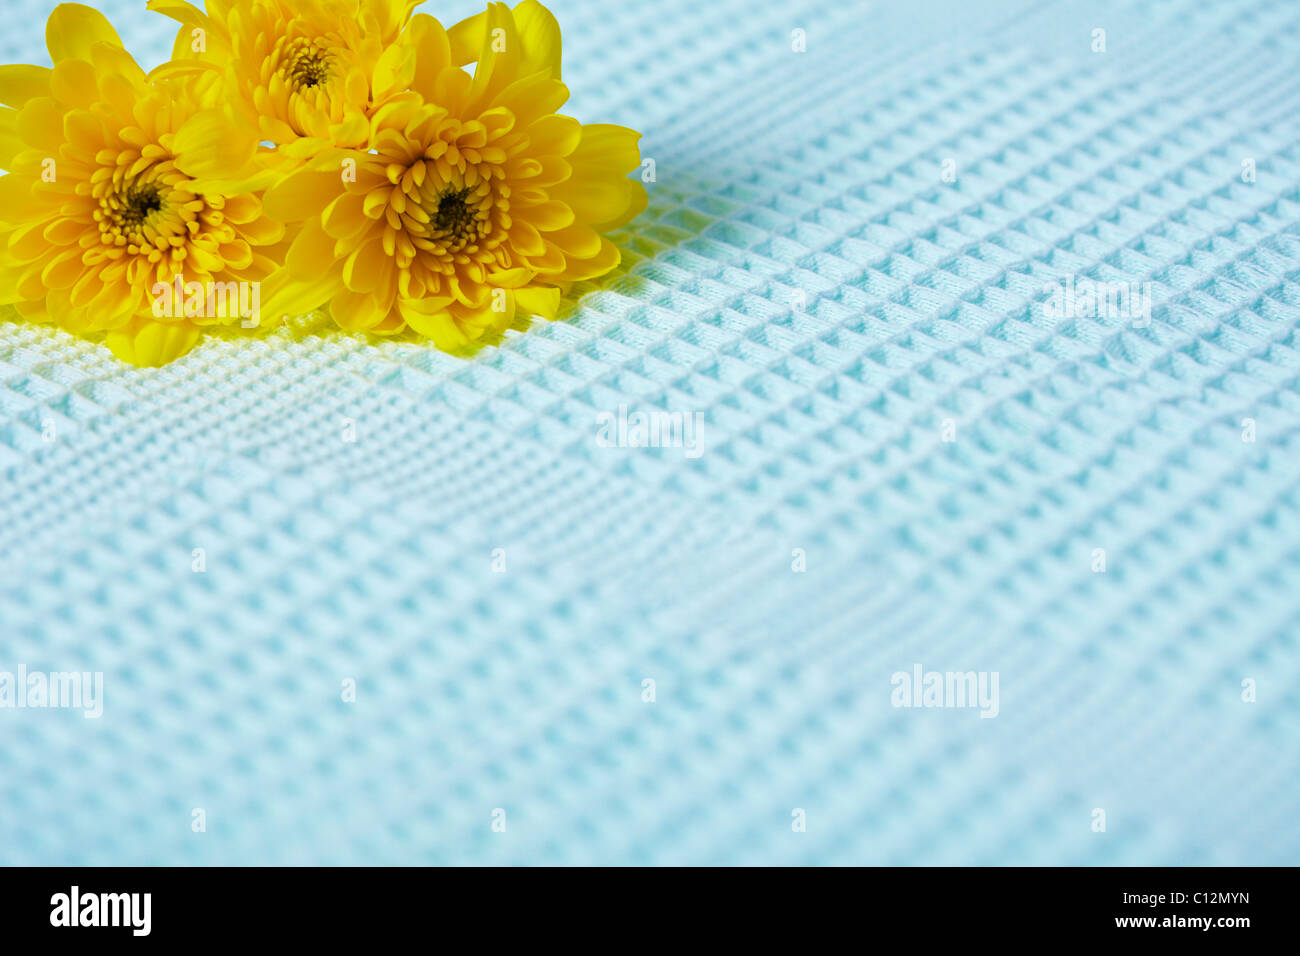 Composition de fleurs jaunes contrastées sur un fond de tissu bleu Banque D'Images